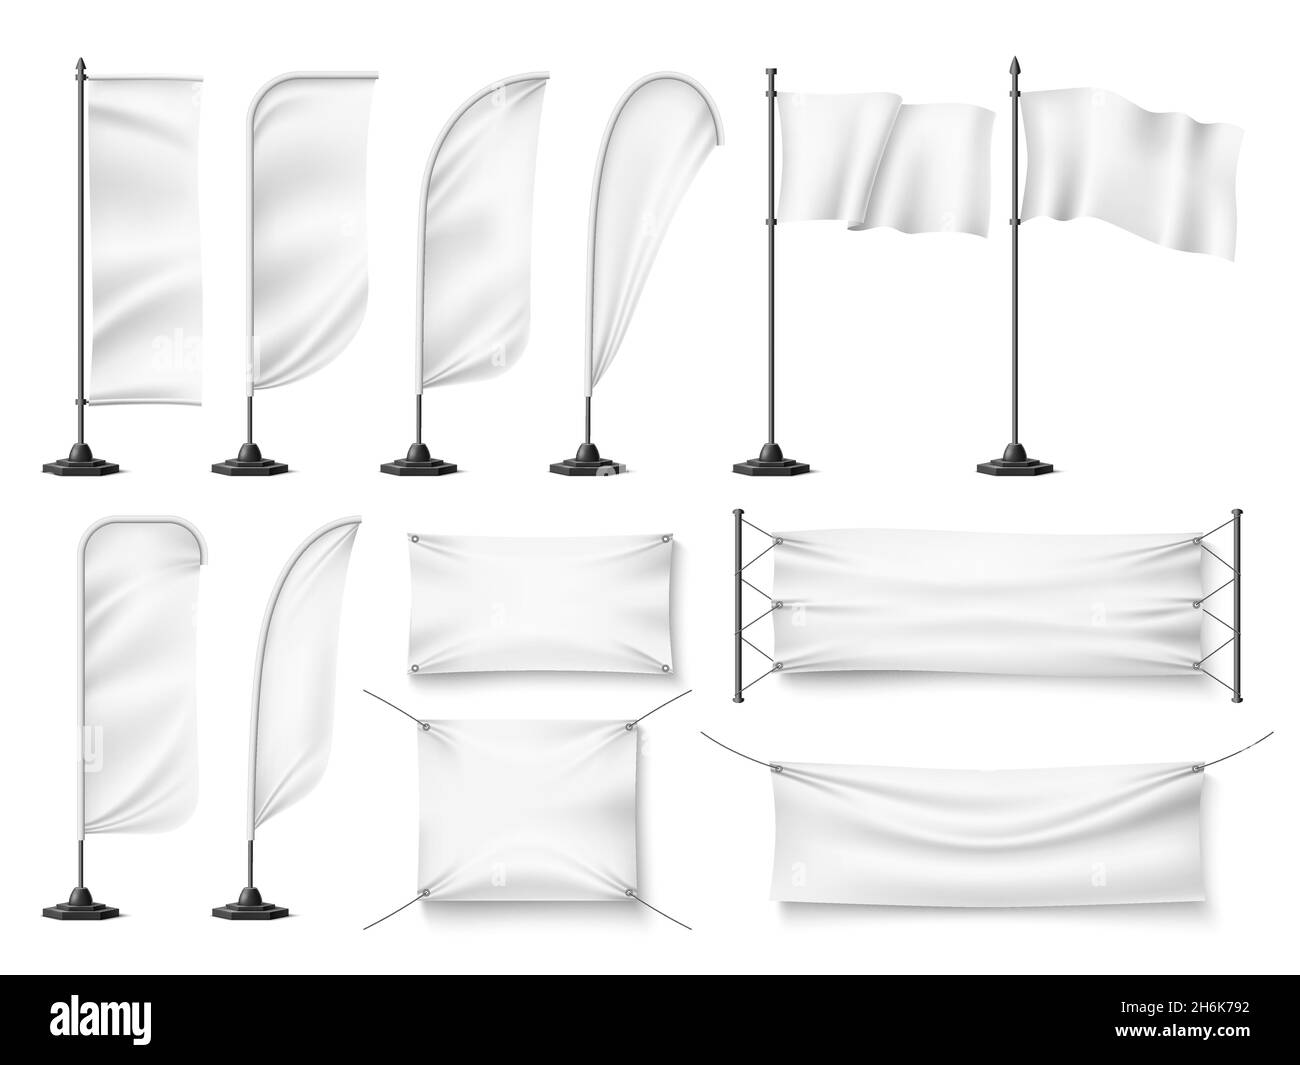 Flaggen und Banner mockup. Realistische weiße textile leere Werbeschablonen auf Flaggenstäben, Werbung für saubere Leinwände aus Stoff. Vektorset Stock Vektor